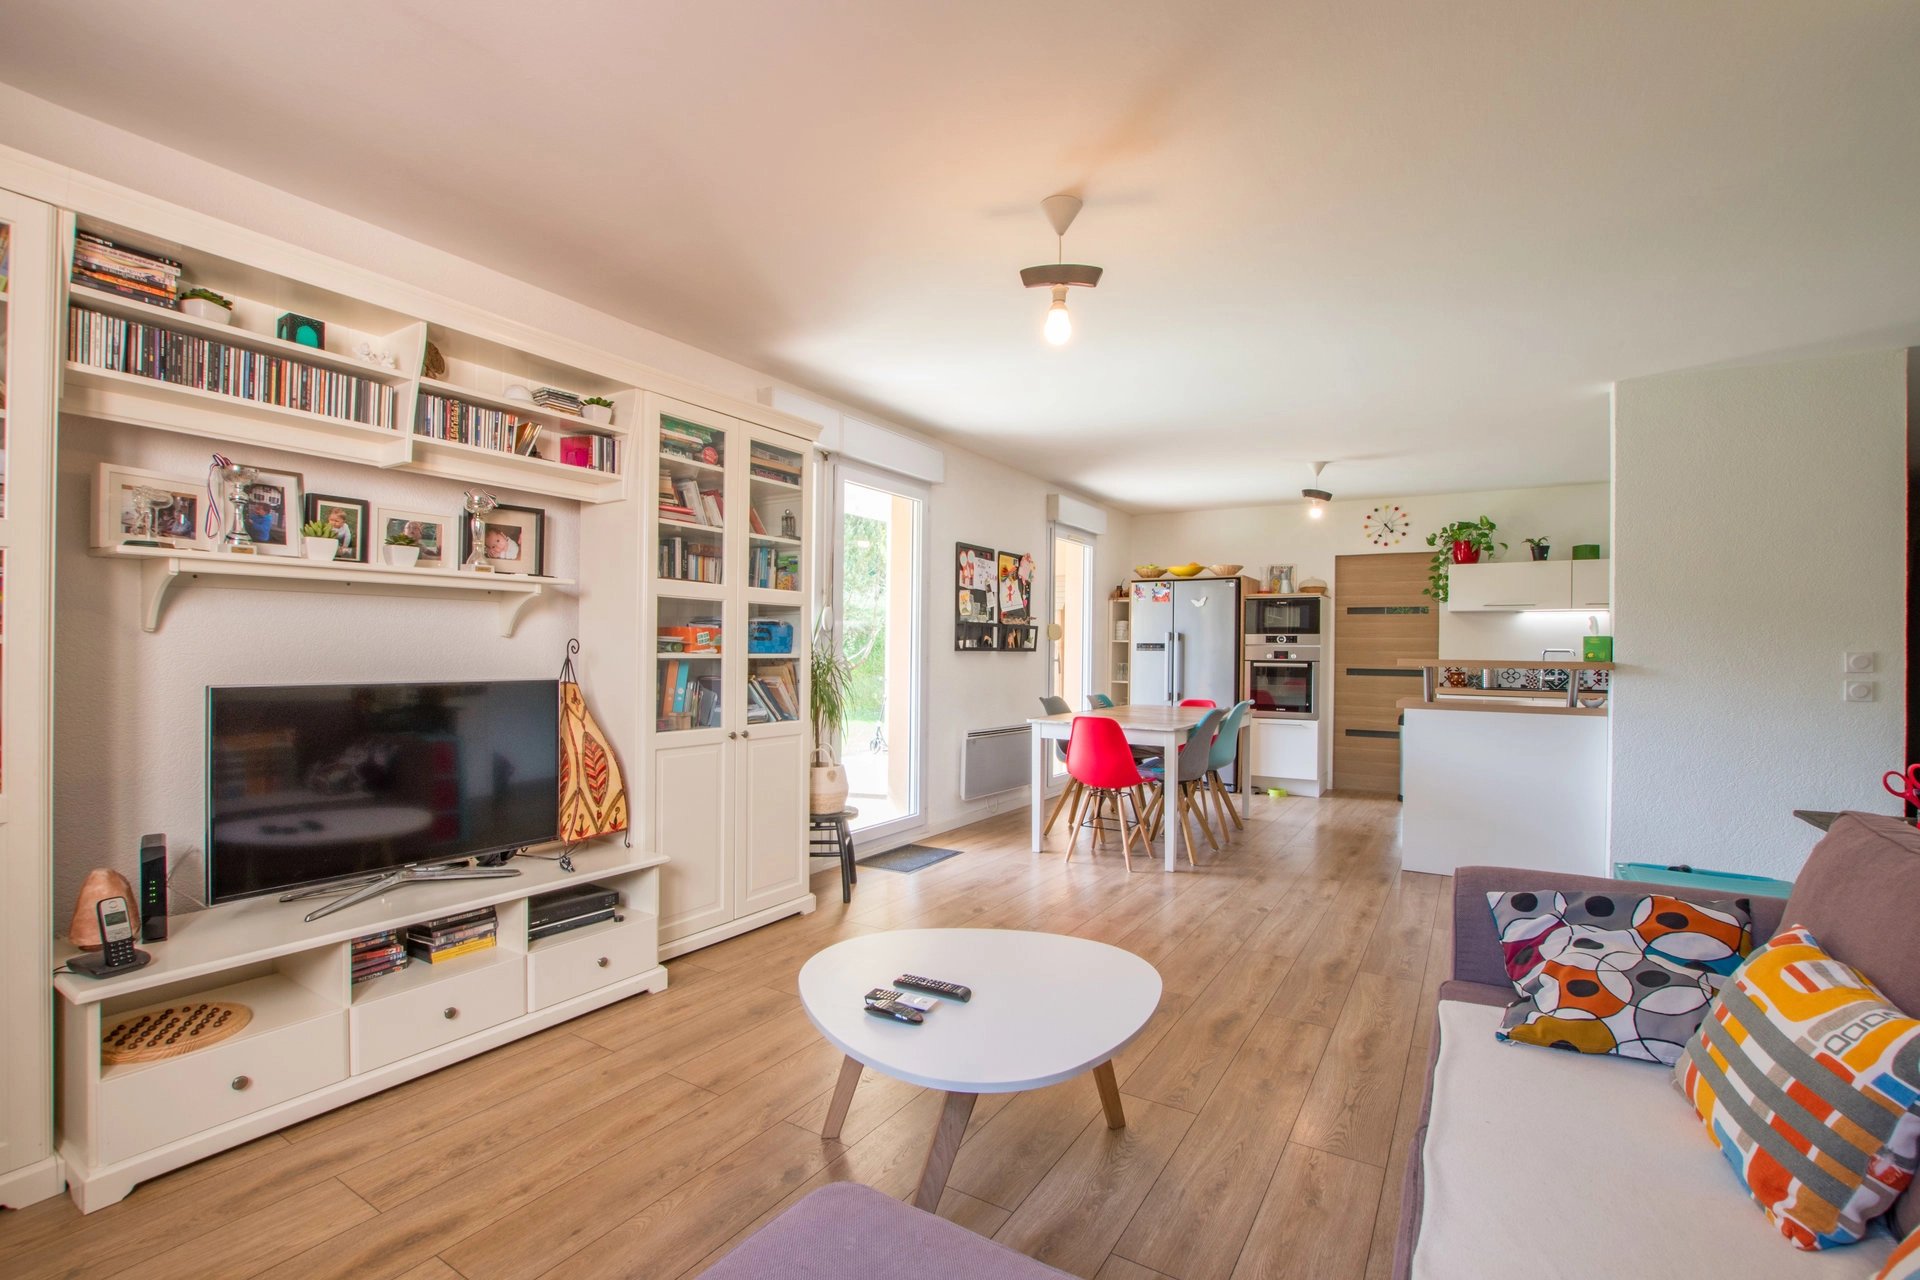 Living-room Wooden floor